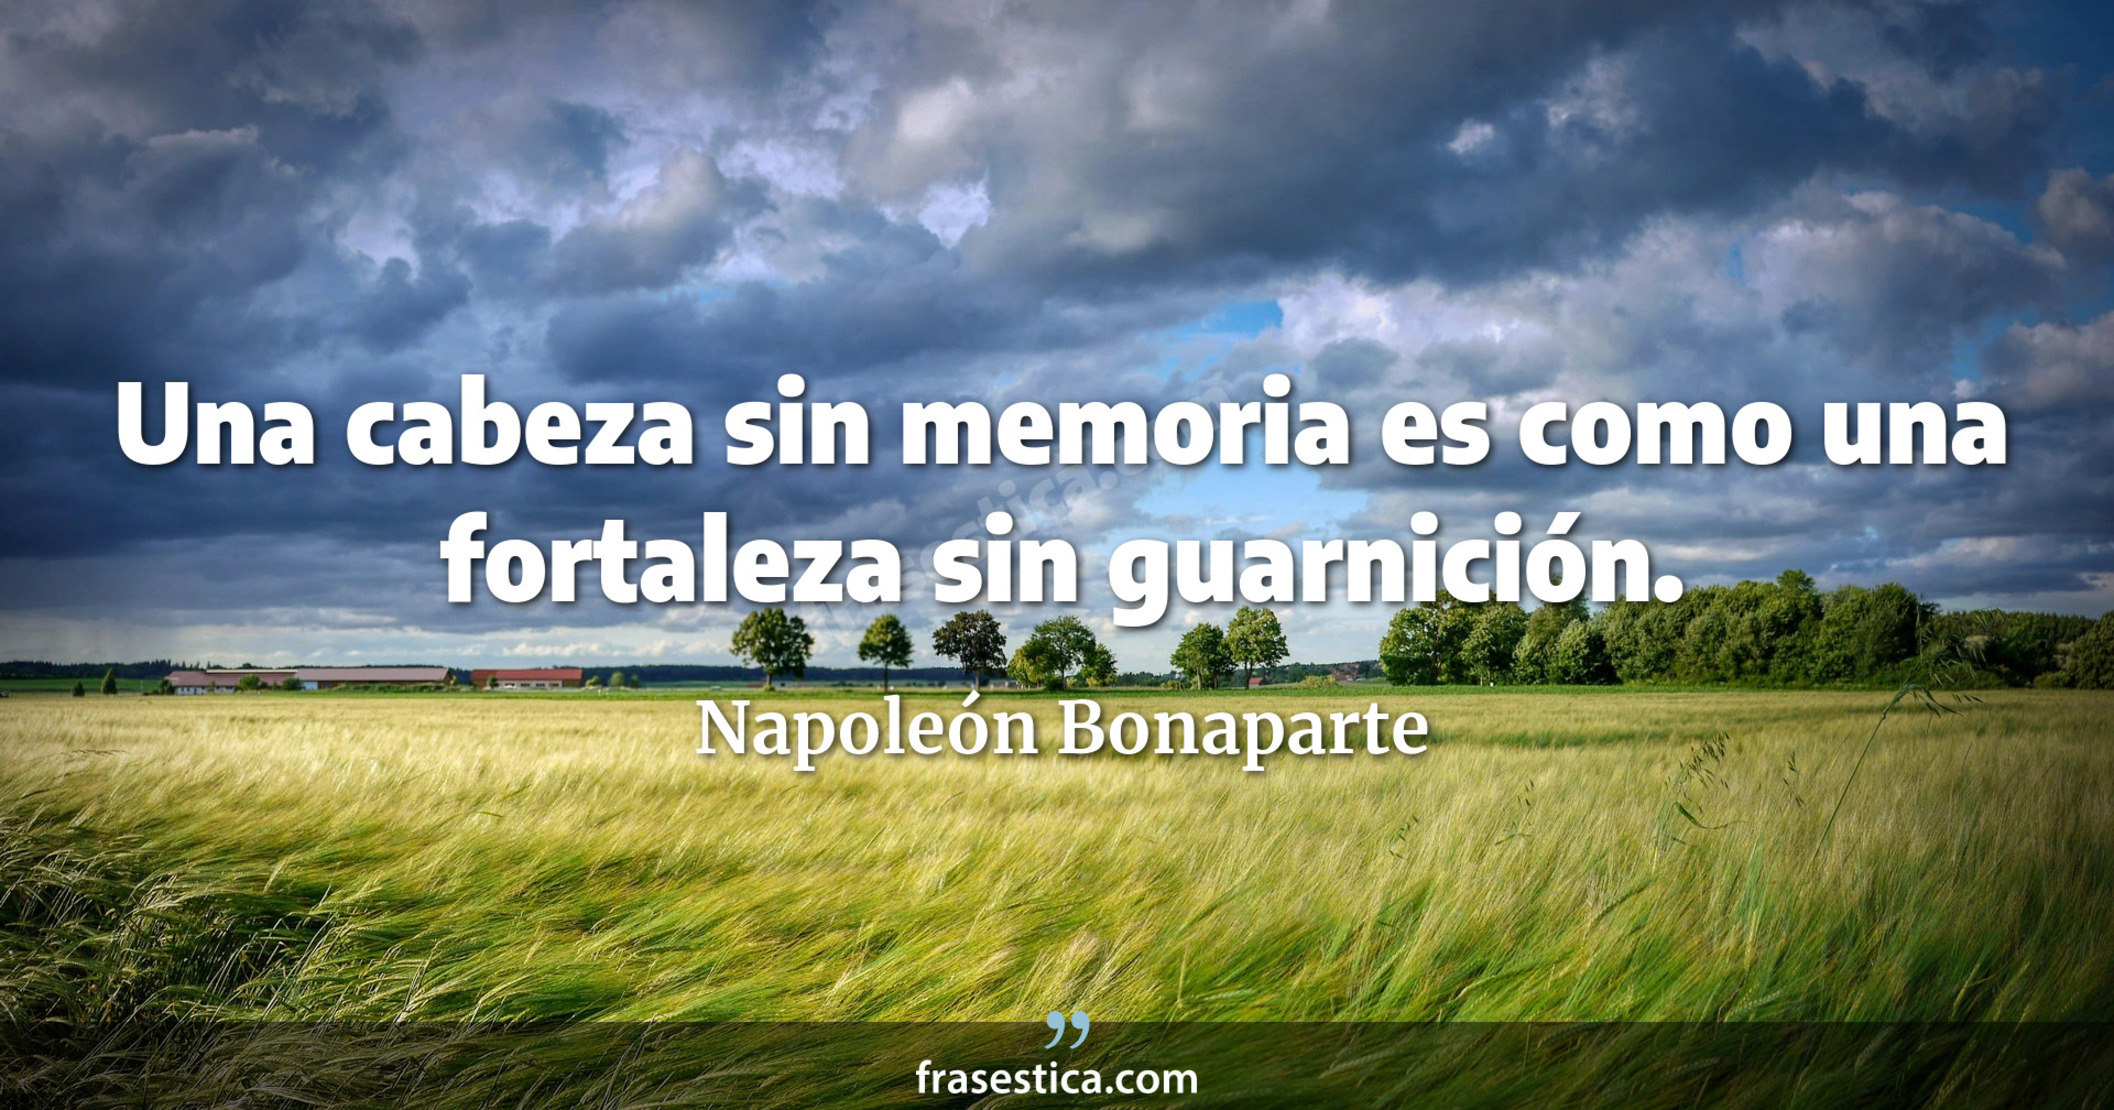 Una cabeza sin memoria es como una fortaleza sin guarnición. - Napoleón Bonaparte